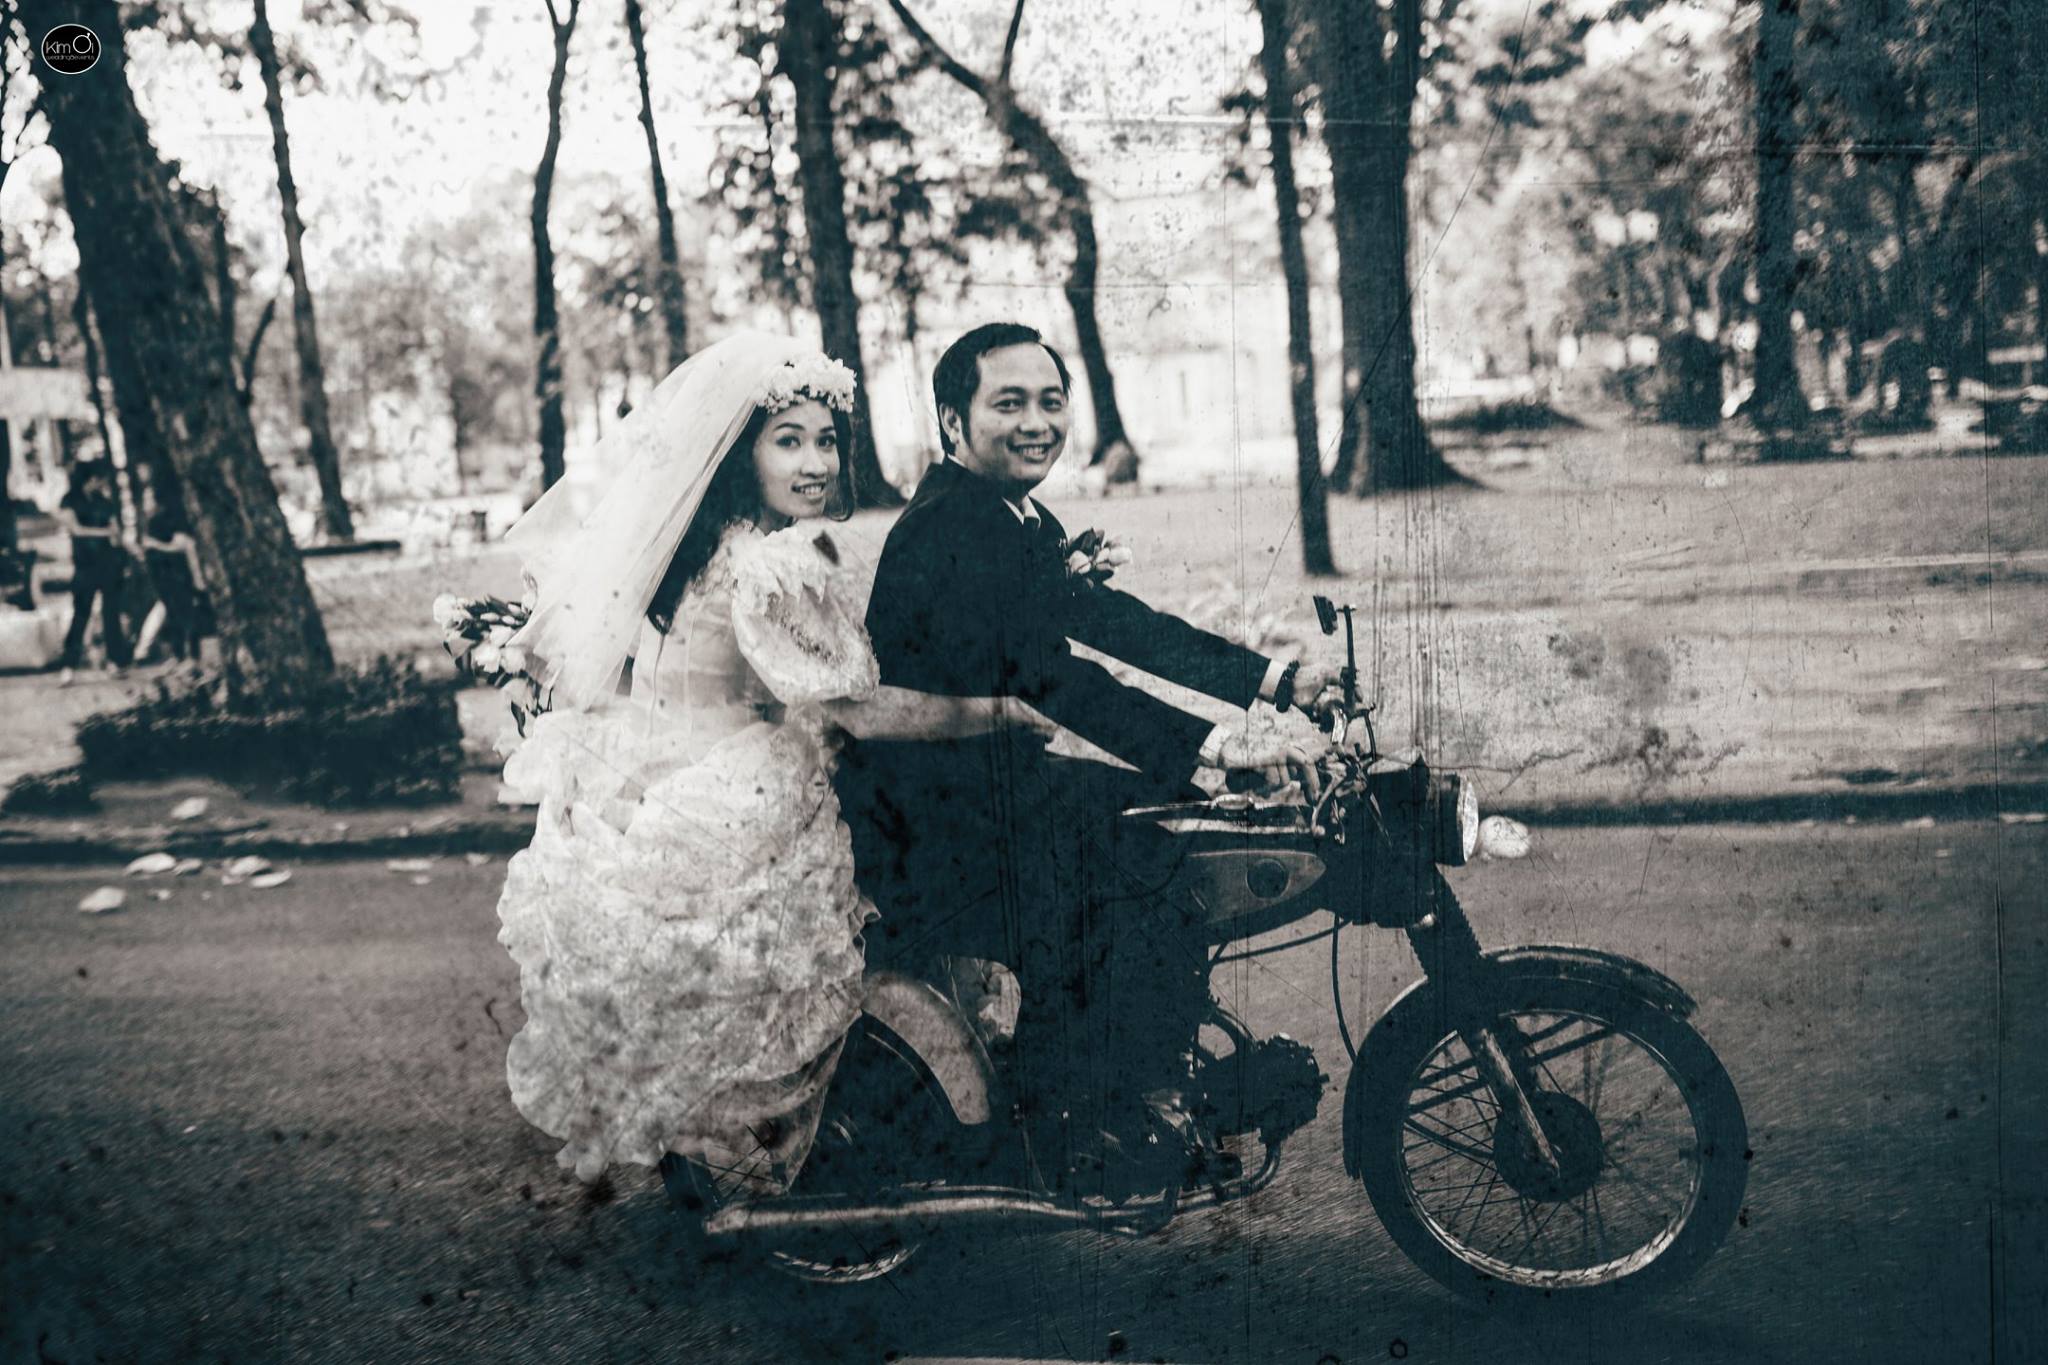 Ảnh cưới Sài Gòn 80: Sài Gòn xưa và nay luôn là điểm đến lãng mạn cho các cặp đôi trong ngày cưới. Bức ảnh này sẽ giúp bạn lưu giữ những khoảnh khắc đầy cảm xúc và tình yêu của hai người trong một tình huống hoàn hảo. Hãy cùng ngắm nhìn và trầm trồ.